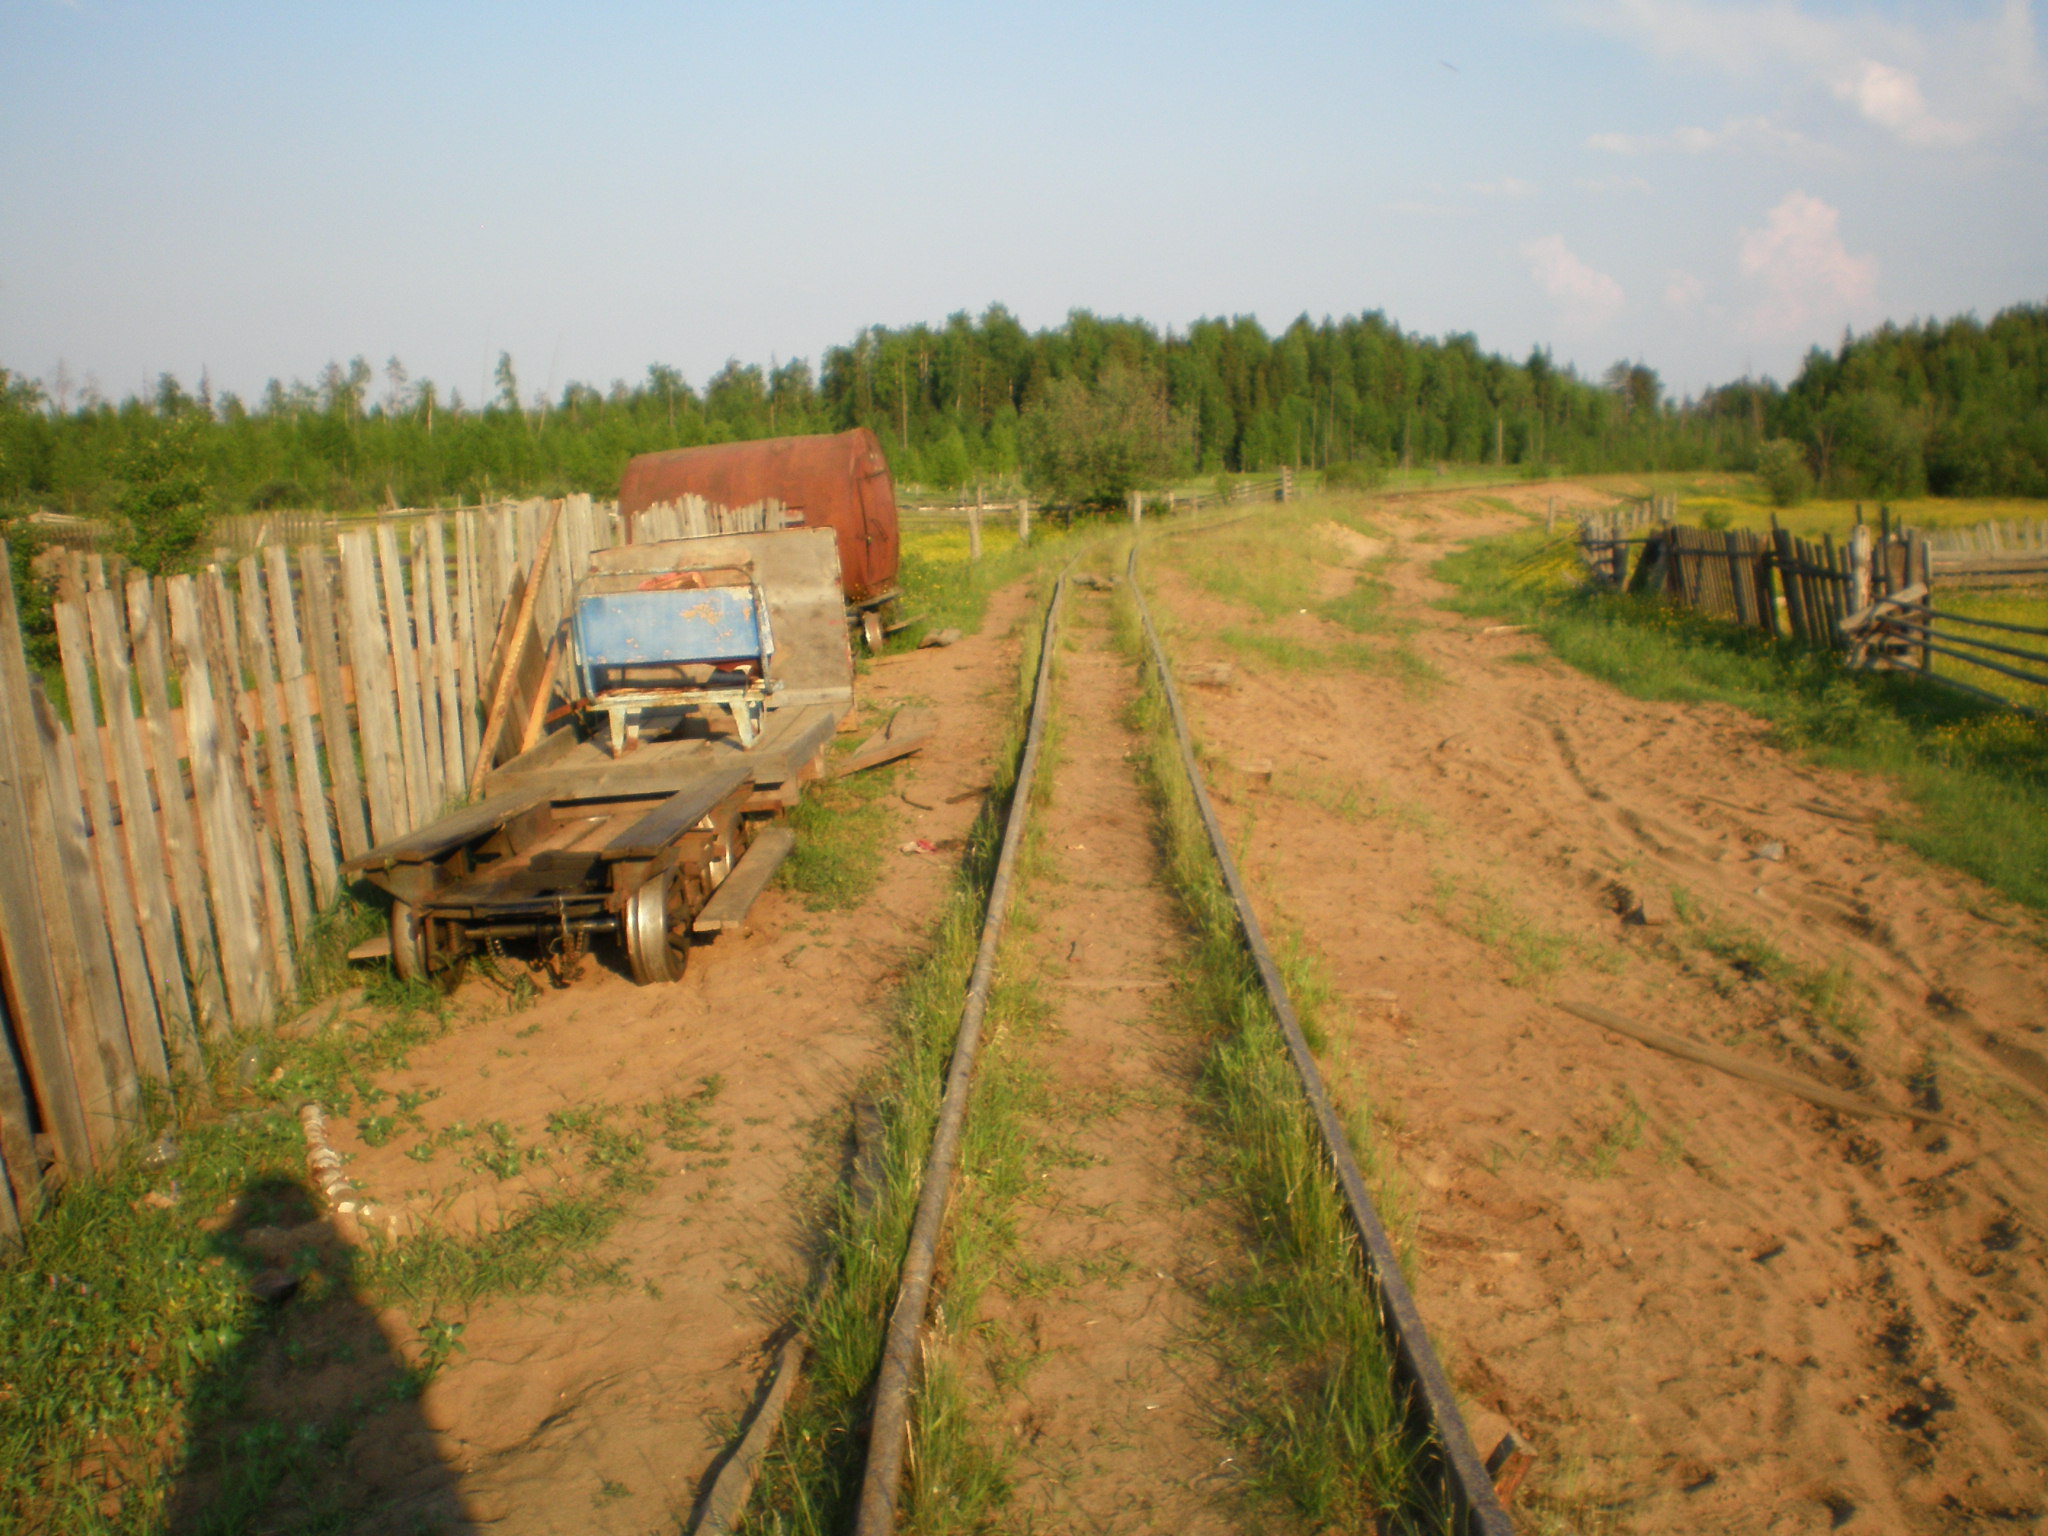 Смолянская узкоколейная железная дорога  —  фотографии, сделанные в 2008 году (часть 2)